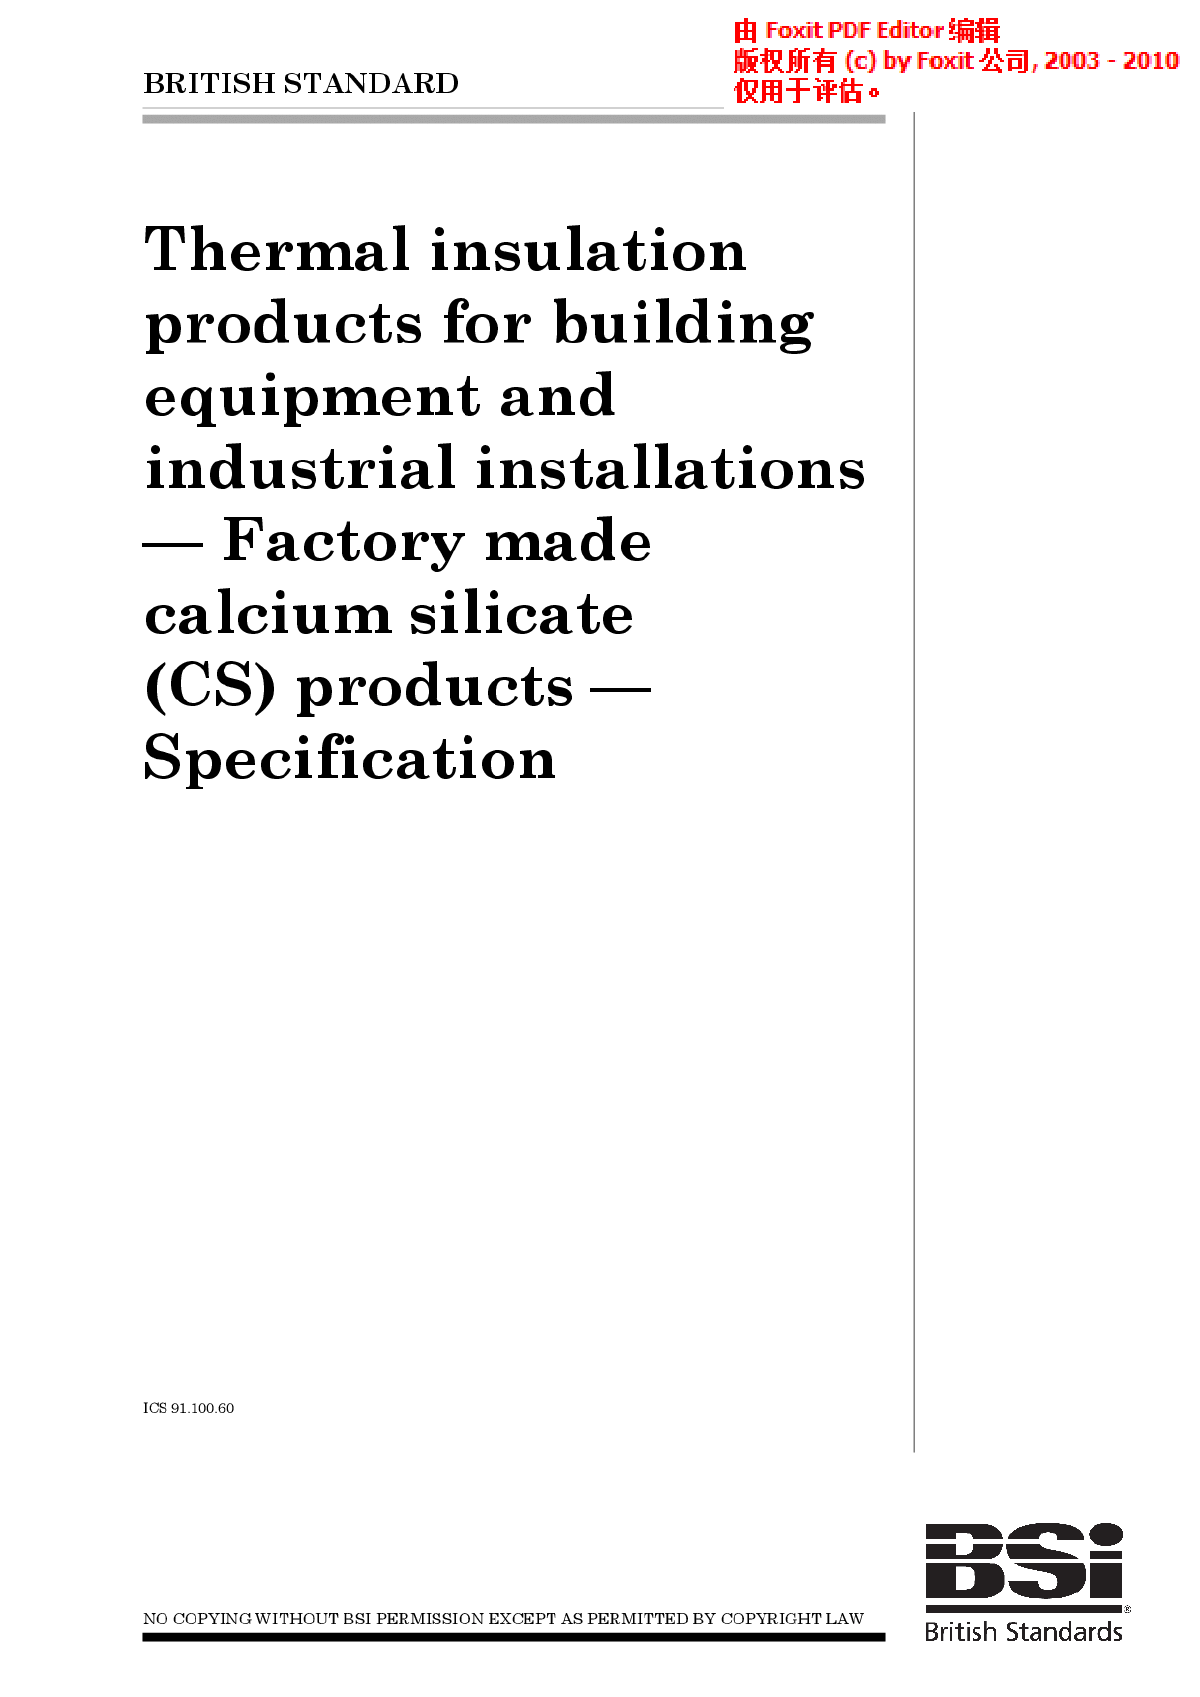  建筑设备和工业装置用热绝缘产品.工厂制硅酸钙(CS)产品.规范